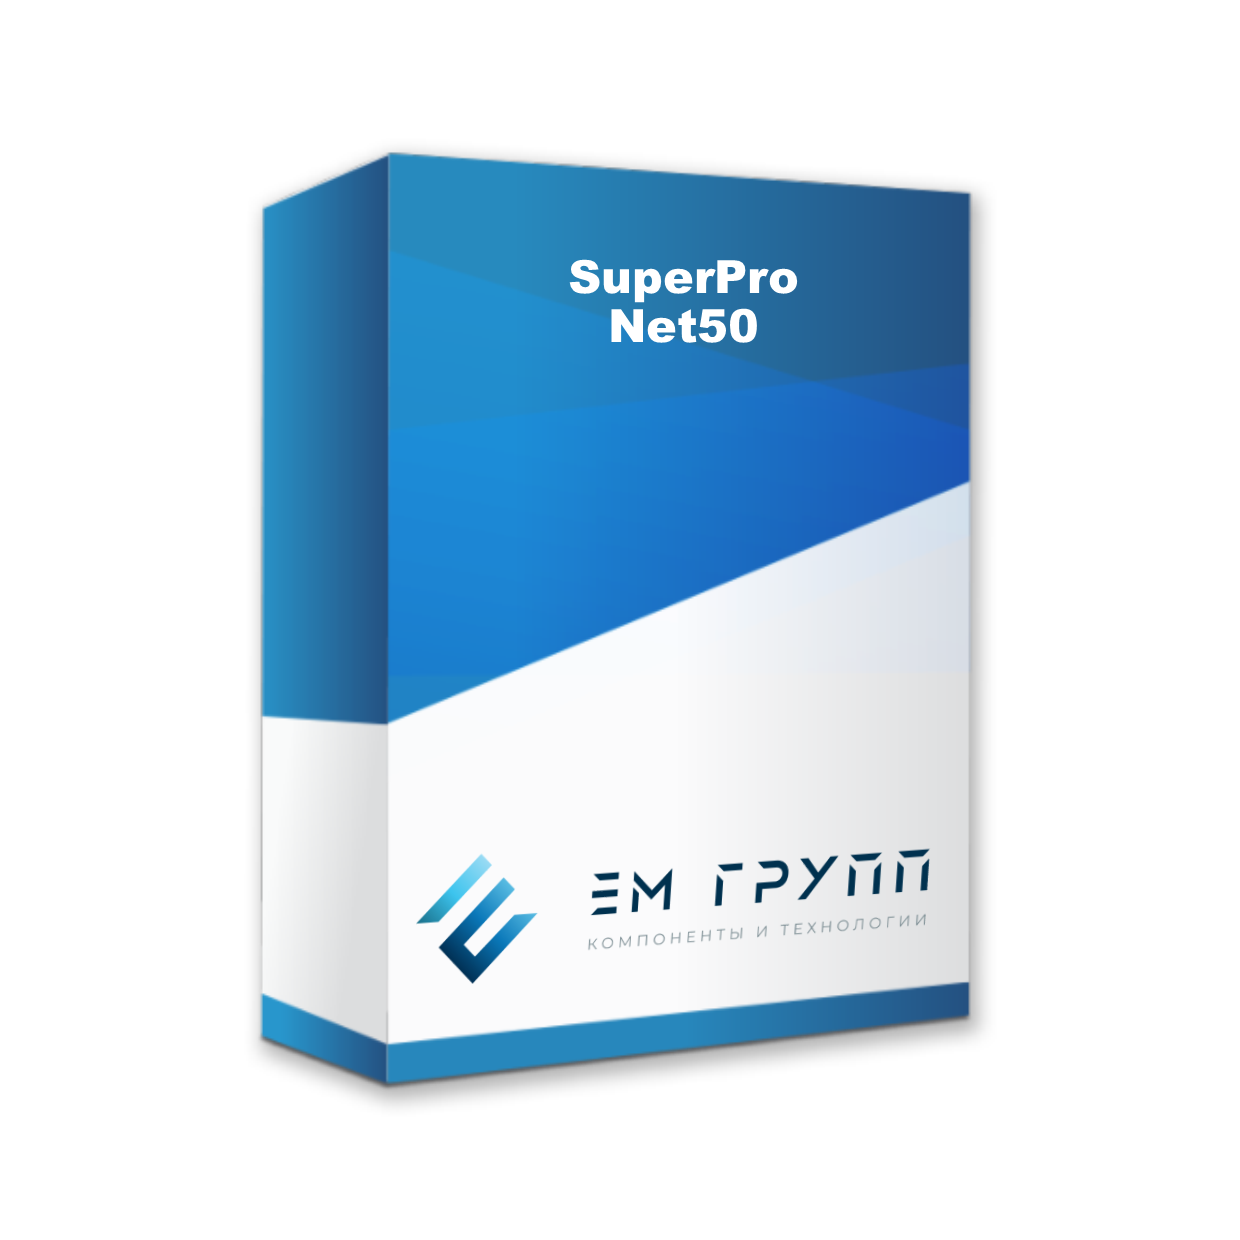 SuperPro Net50 от Safenet купить в ЕвроМобайл